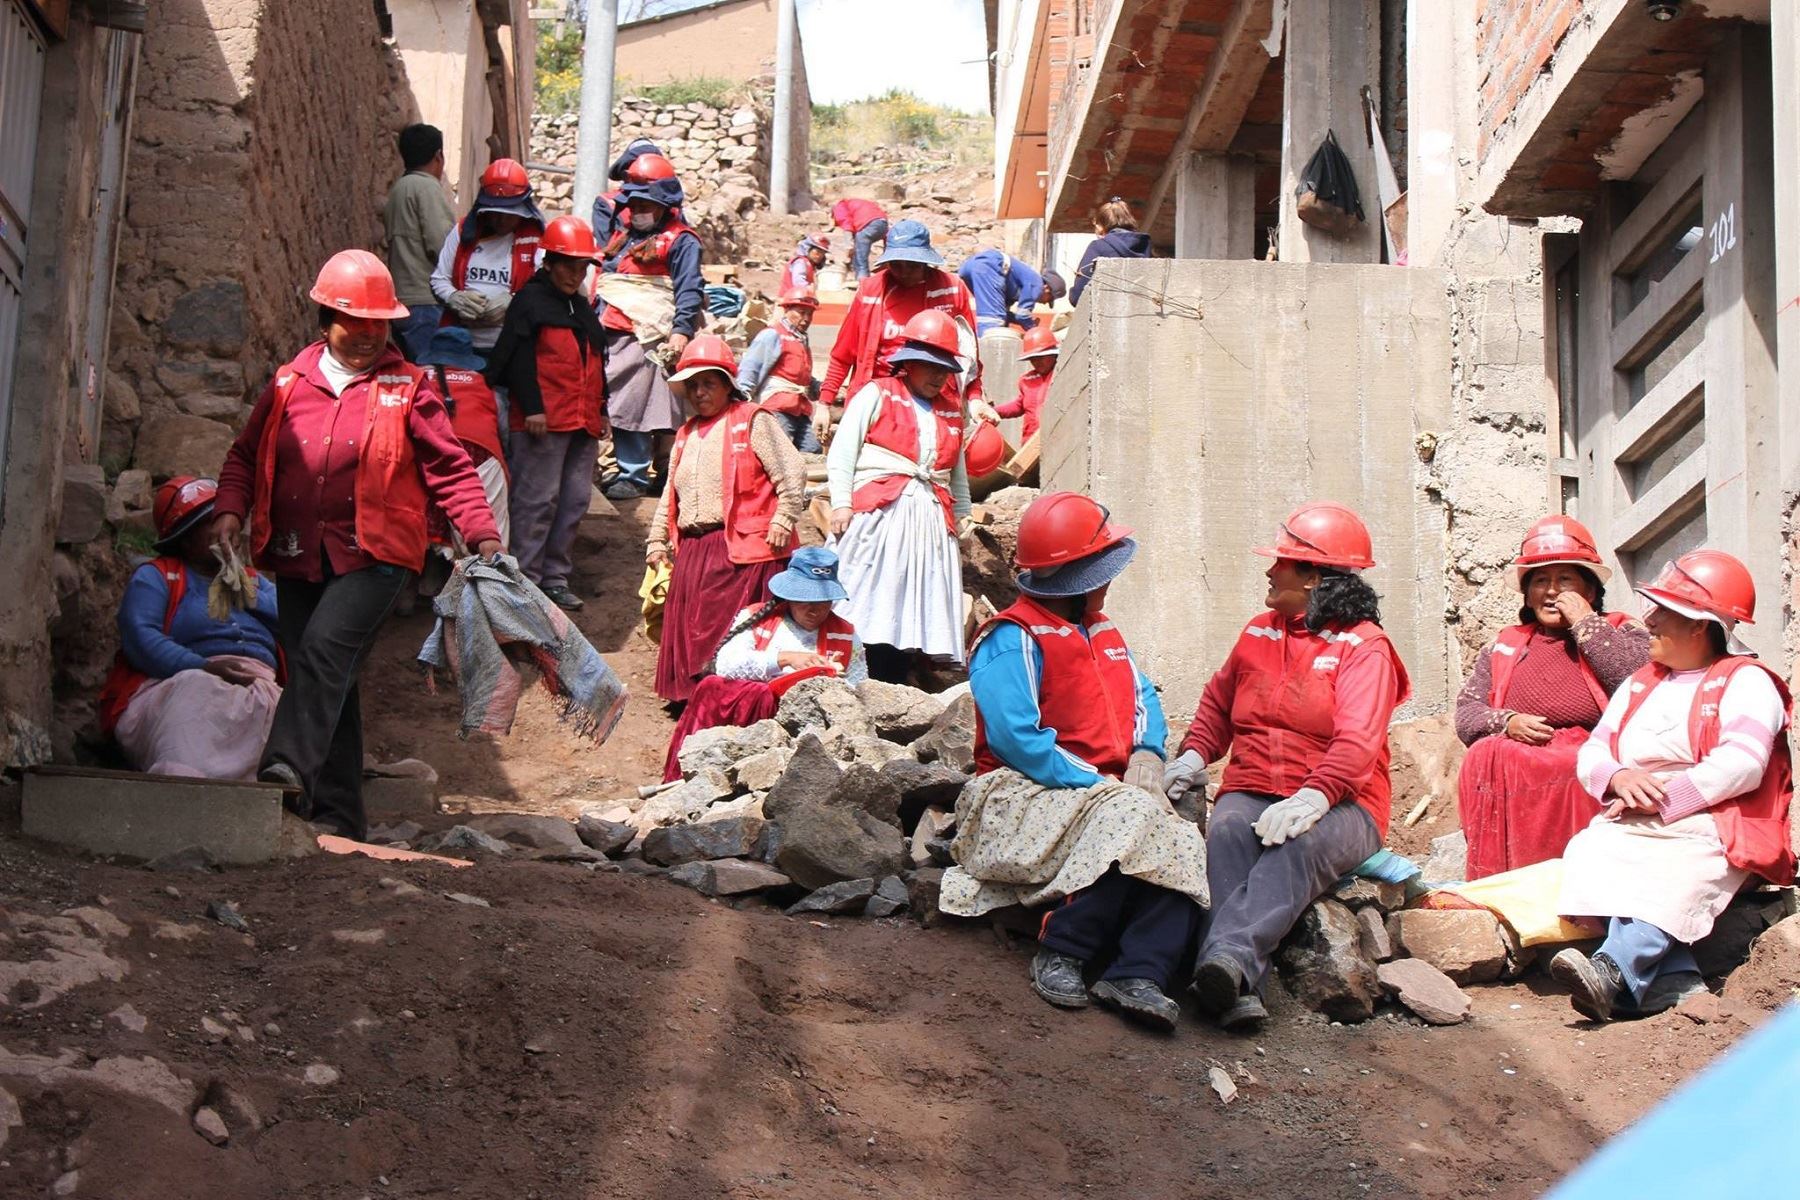 Trabaja Perú generó más de 2,000 empleos para personas pobres de Cusco. ANDINA/Percy Hurtado Santillán